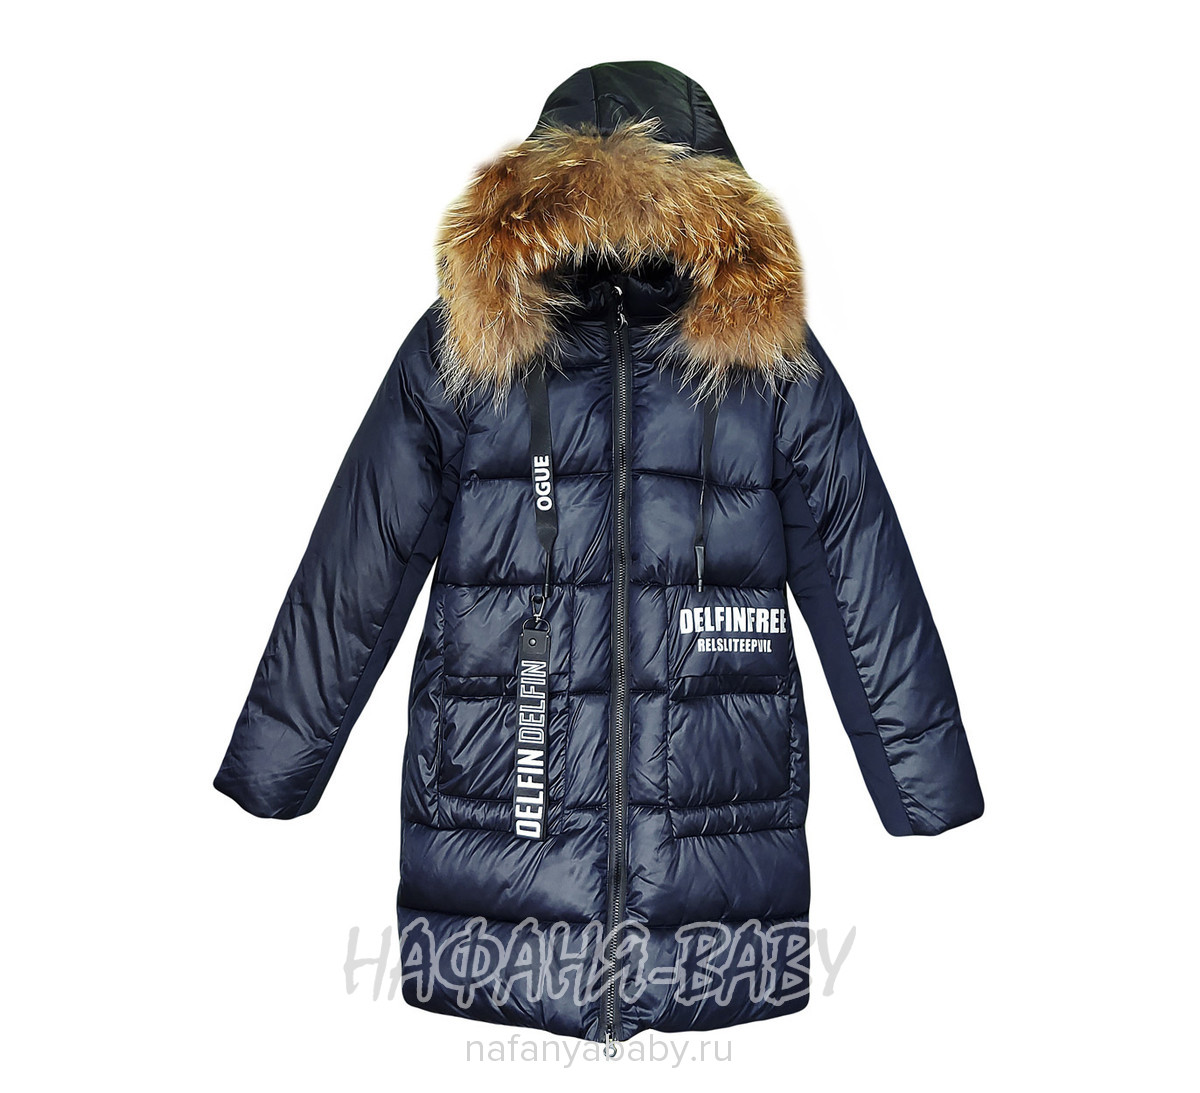 Зимнее пальто DELFIN-FREE, купить в интернет магазине Нафаня. арт: 2209.